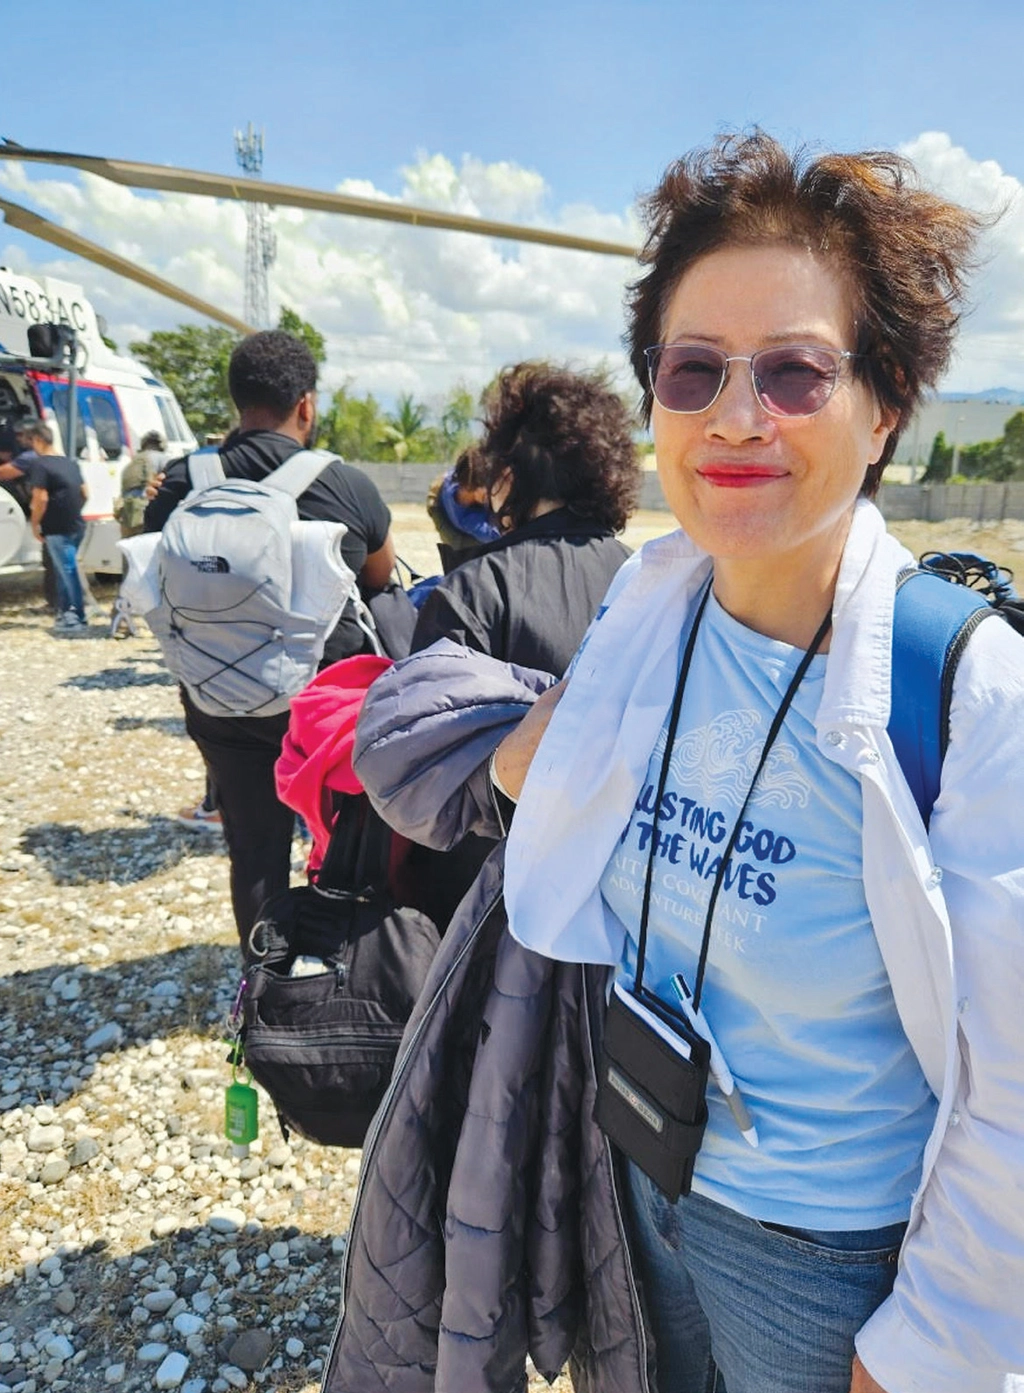 단기 선교를 갔던 아이티에서 갱단 폭동으로 한 달여 간 발이 묶였던 이영숙 목사가 미해병대의 호위 아래 국방부에서 보낸 헬기 탑승을 기다리고 있다